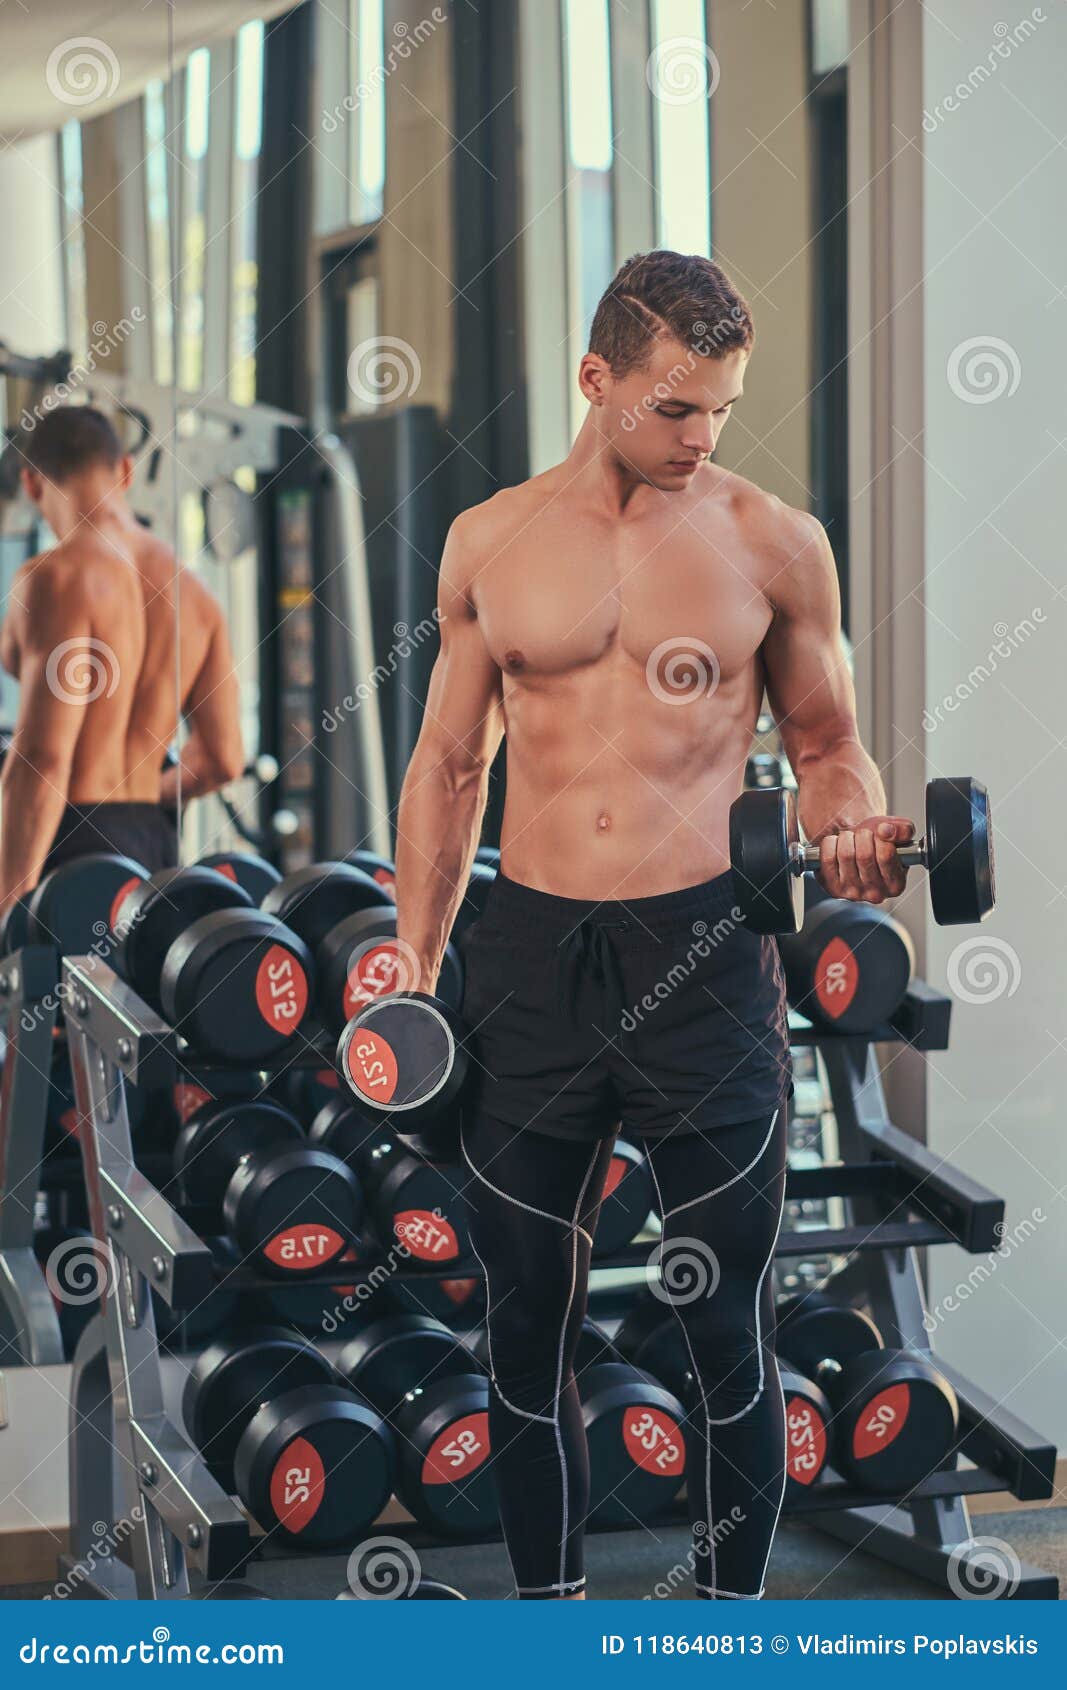 Amateur Pic Gym Nude Man